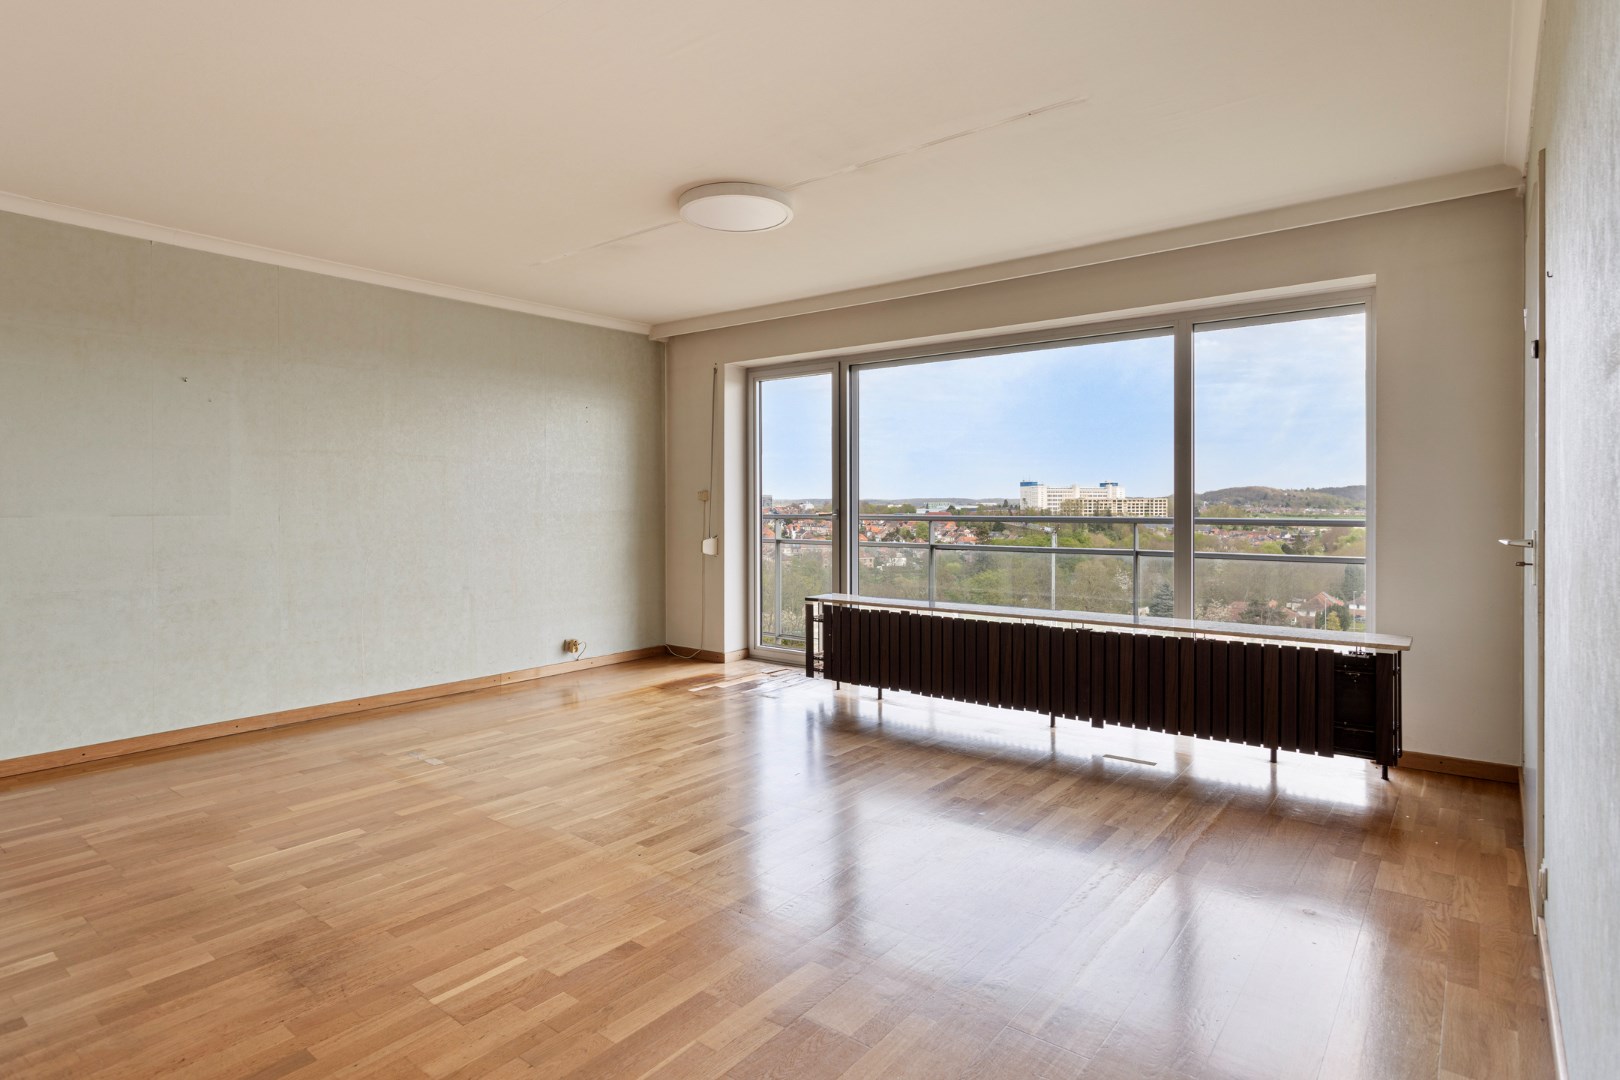  Goed gelegen, op te frissen appartement met een terras van 20,5 m² en 3 slaapkamers vlakbij Leuven - EPC 145 kWh/m² - bewoonbare oppervlakte 107 m² foto 1